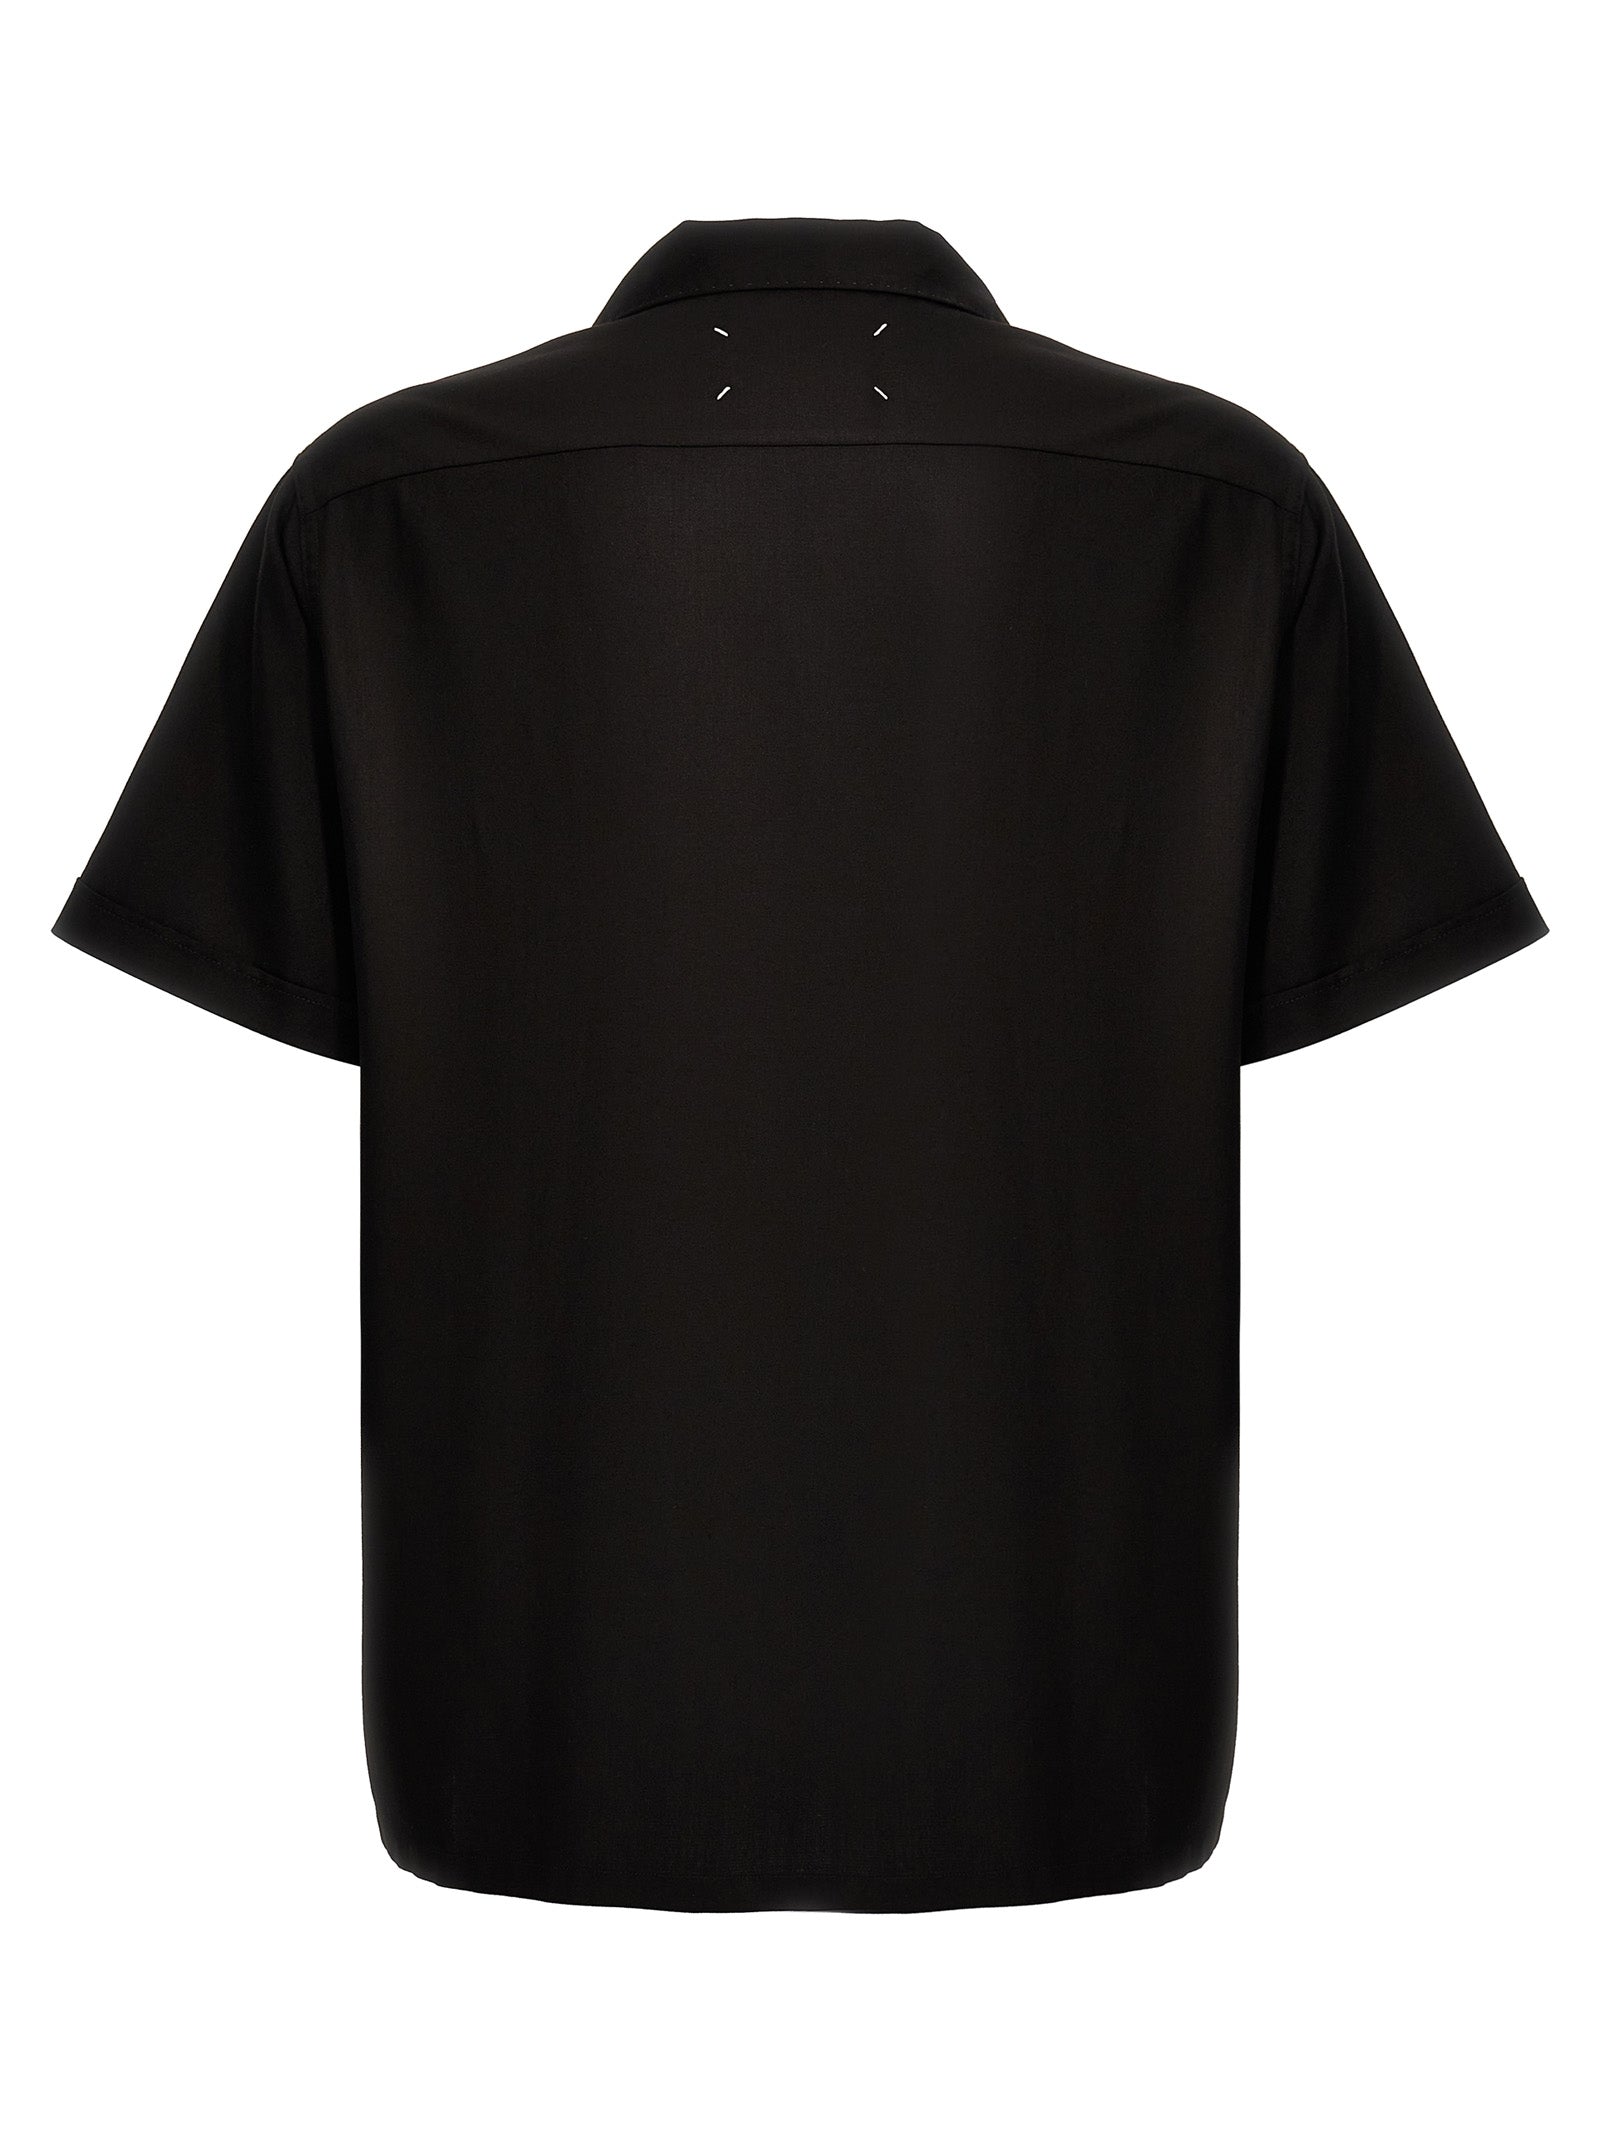 Shop Maison Margiela C Shirt, Blouse Black